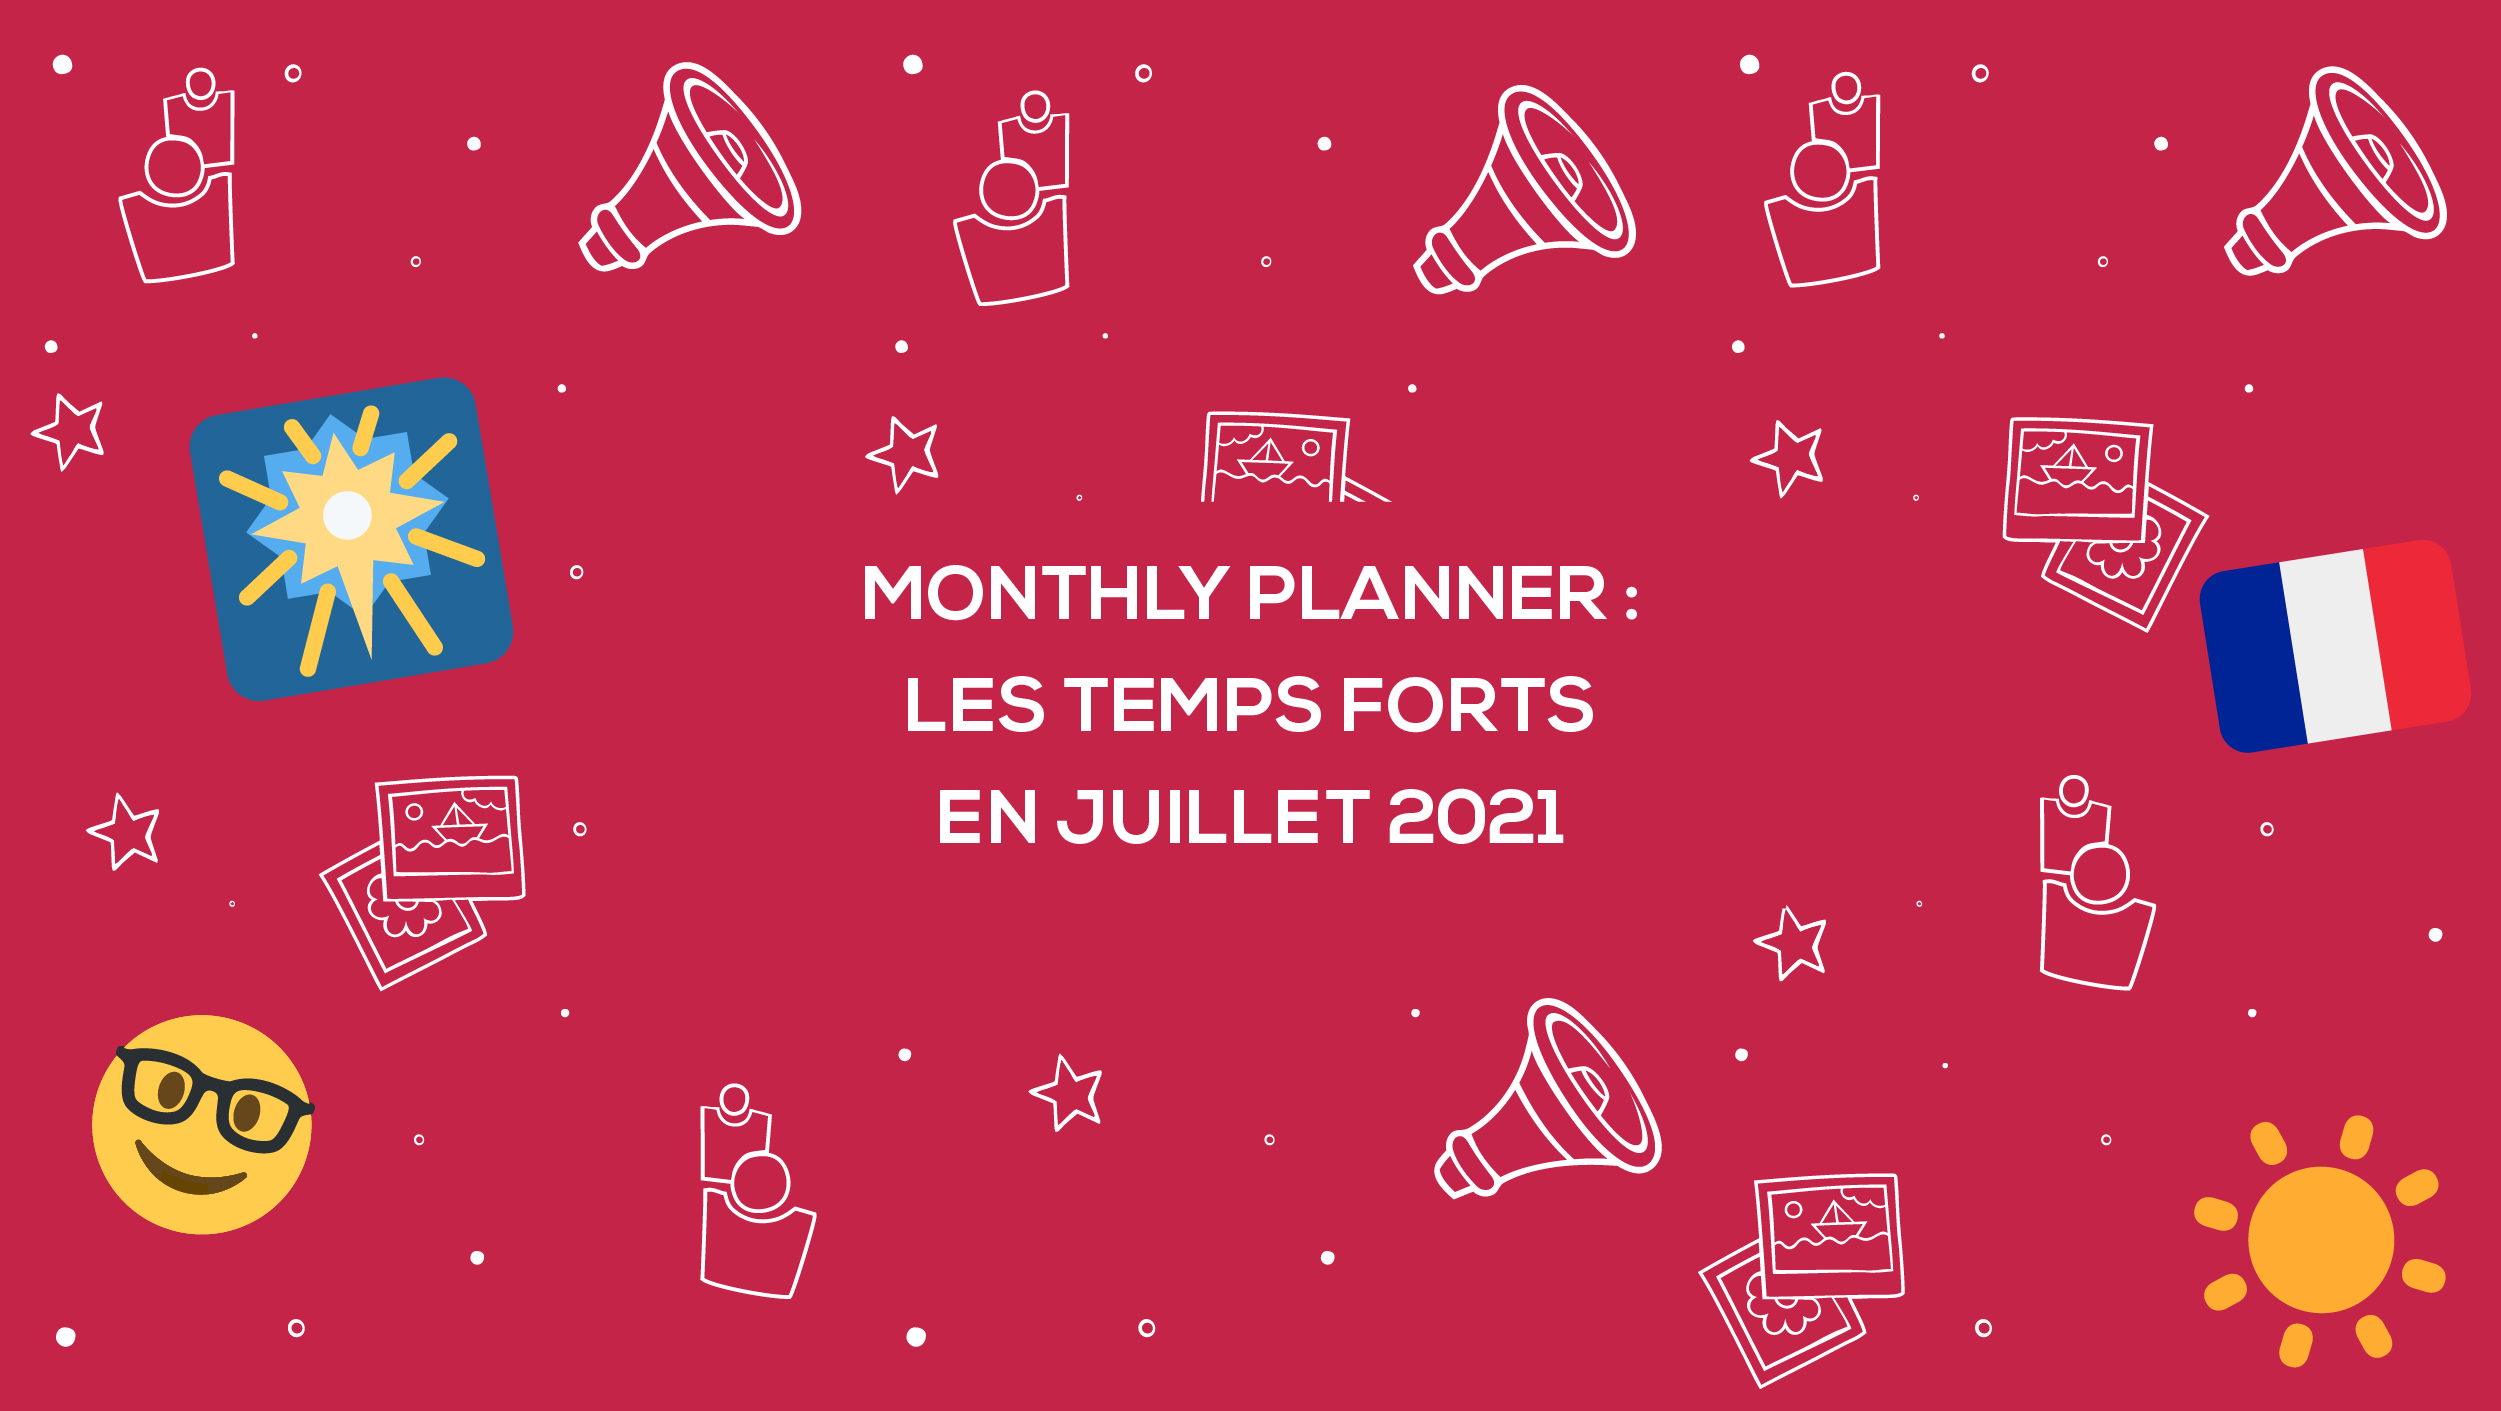 Monthly Planner : les moments importants de juillet 2021